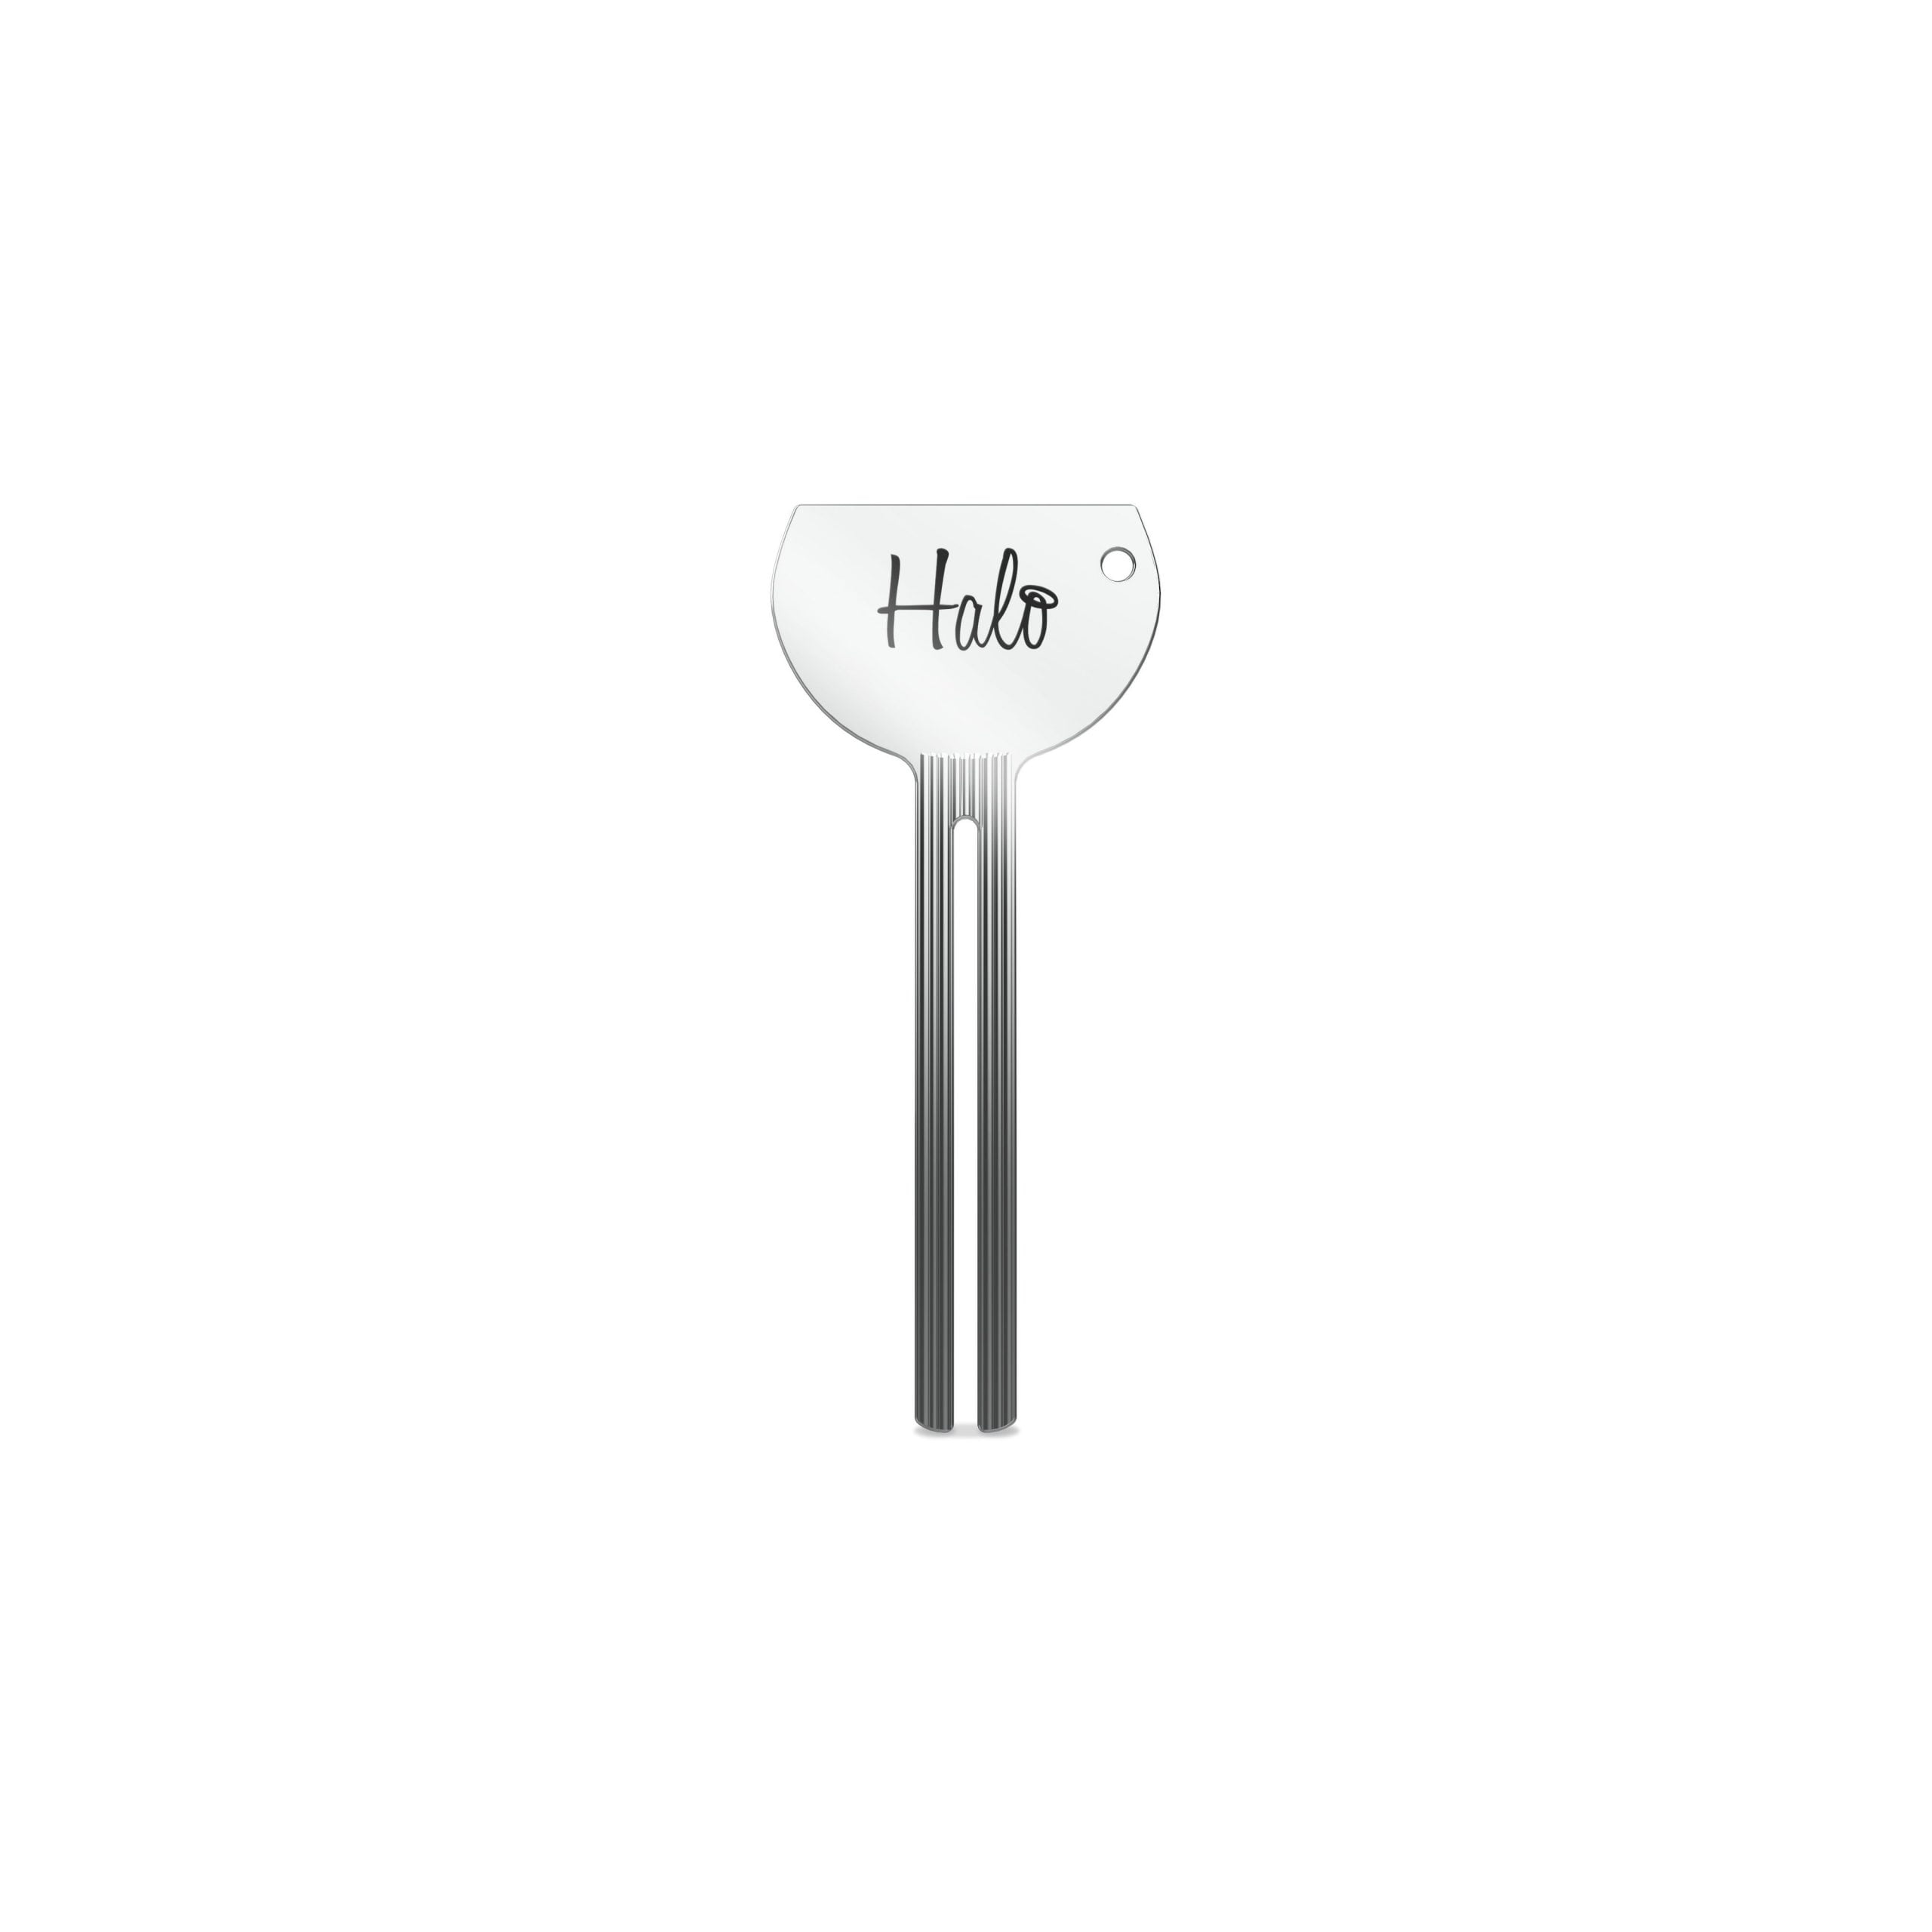 Halo PoliBuild Tube Key